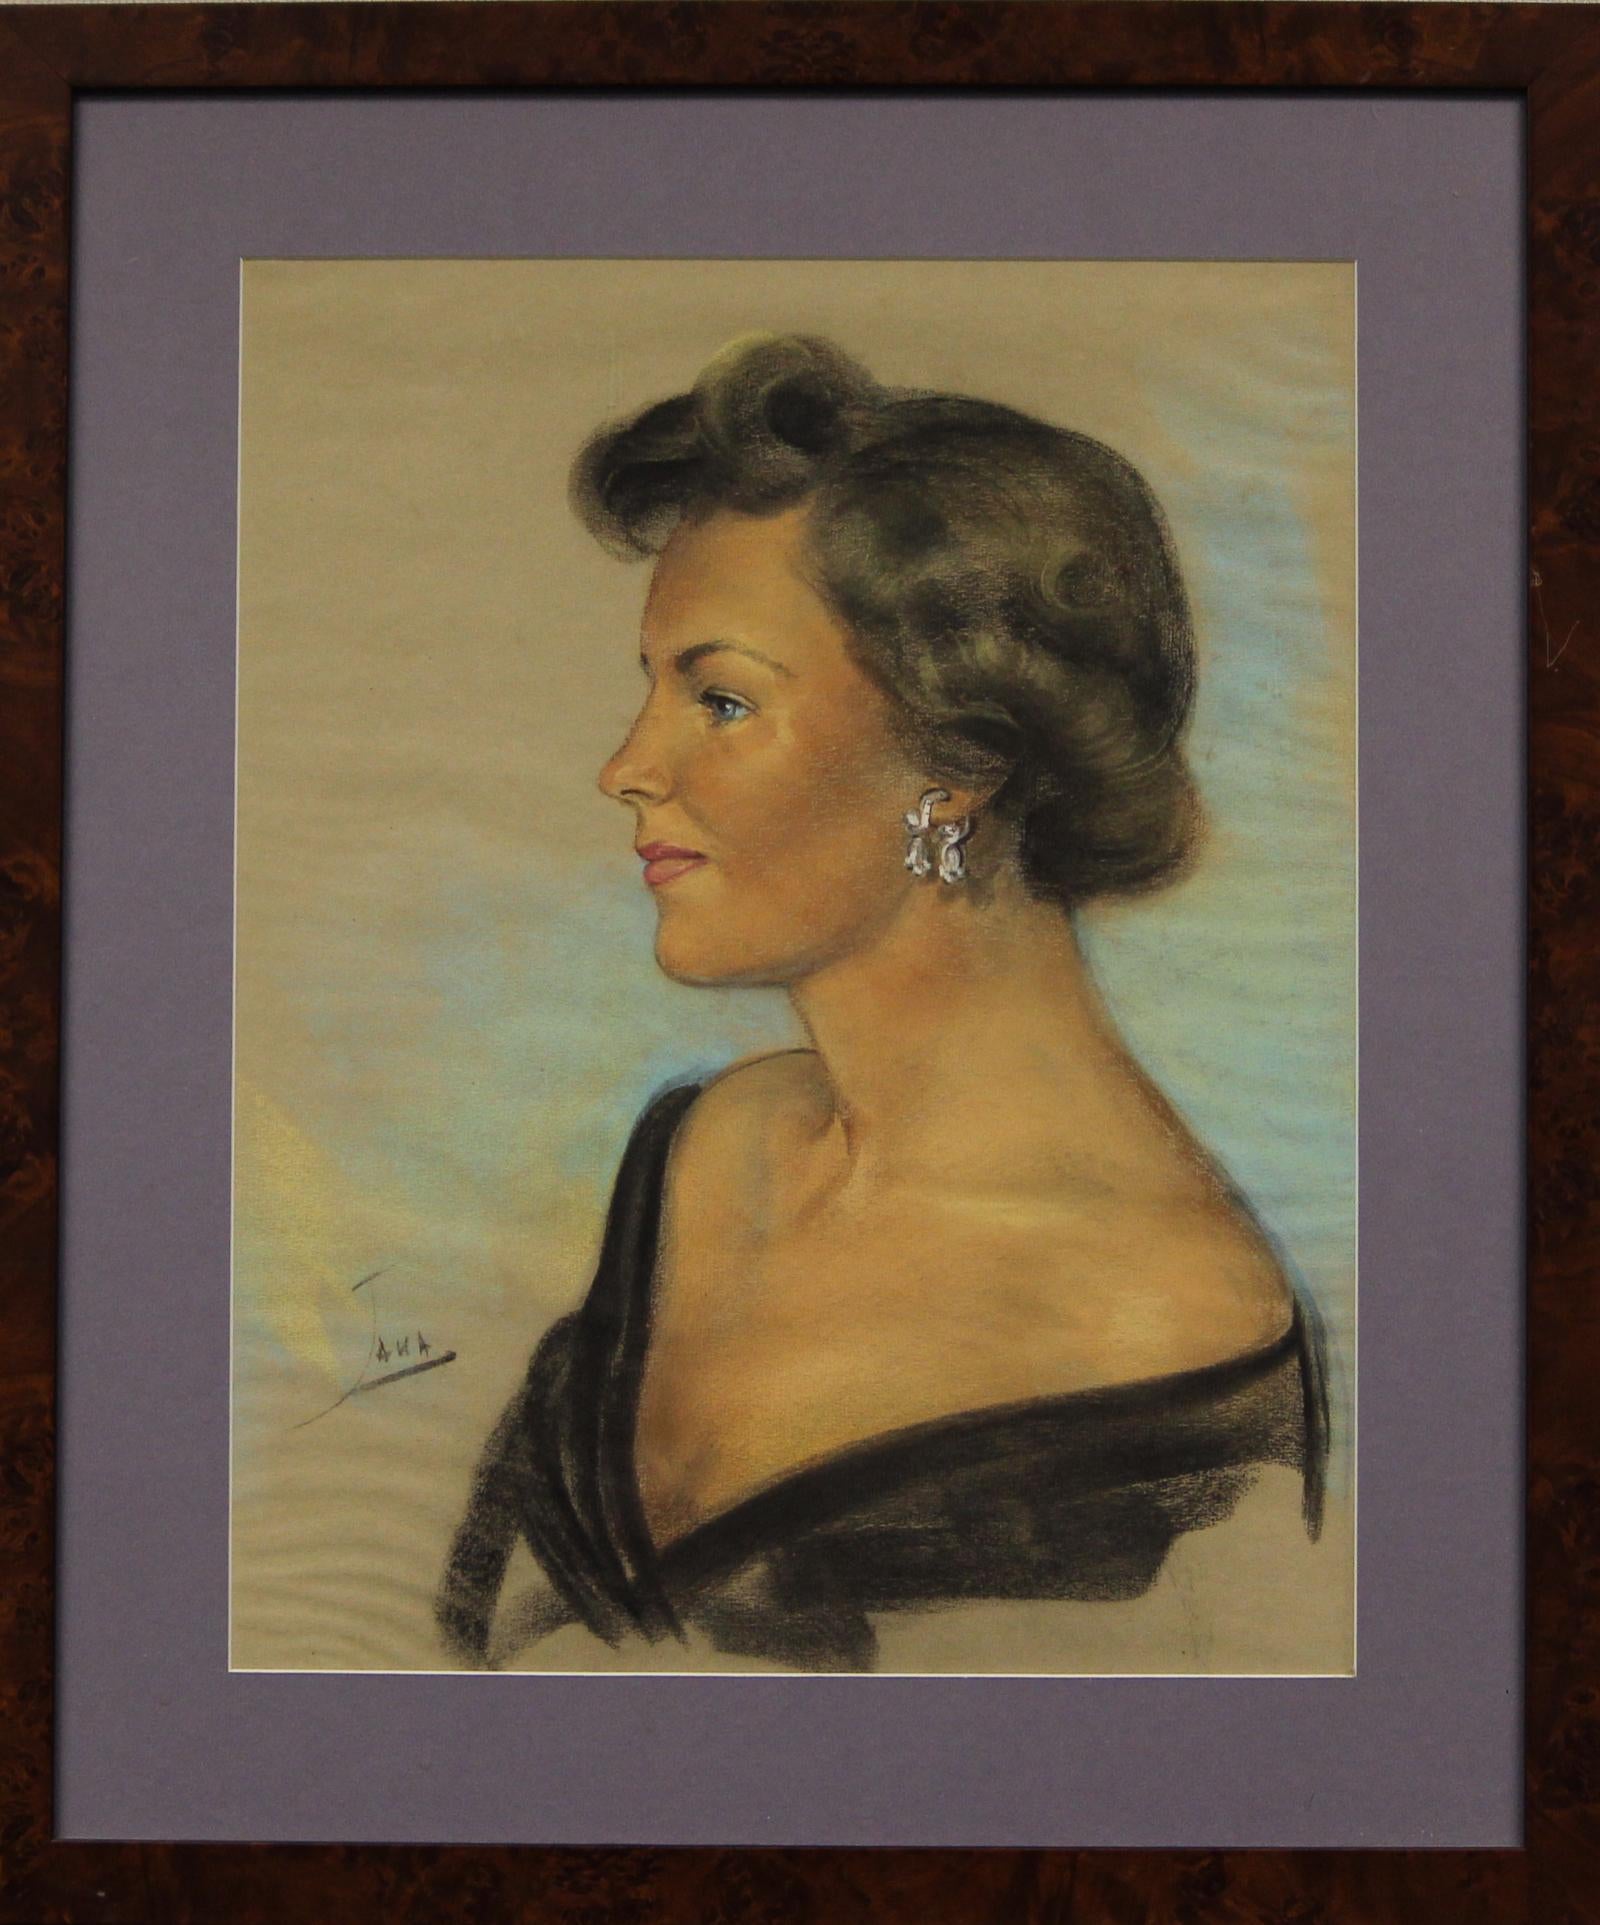 Portrait pastel chic des années 1950 par Jana d'une dame élégante portant des boucles d'oreilles en diamant.

Taille de l'image : 19 "H x 15 "W
Taille du cadre : 26 "H x 22 "W